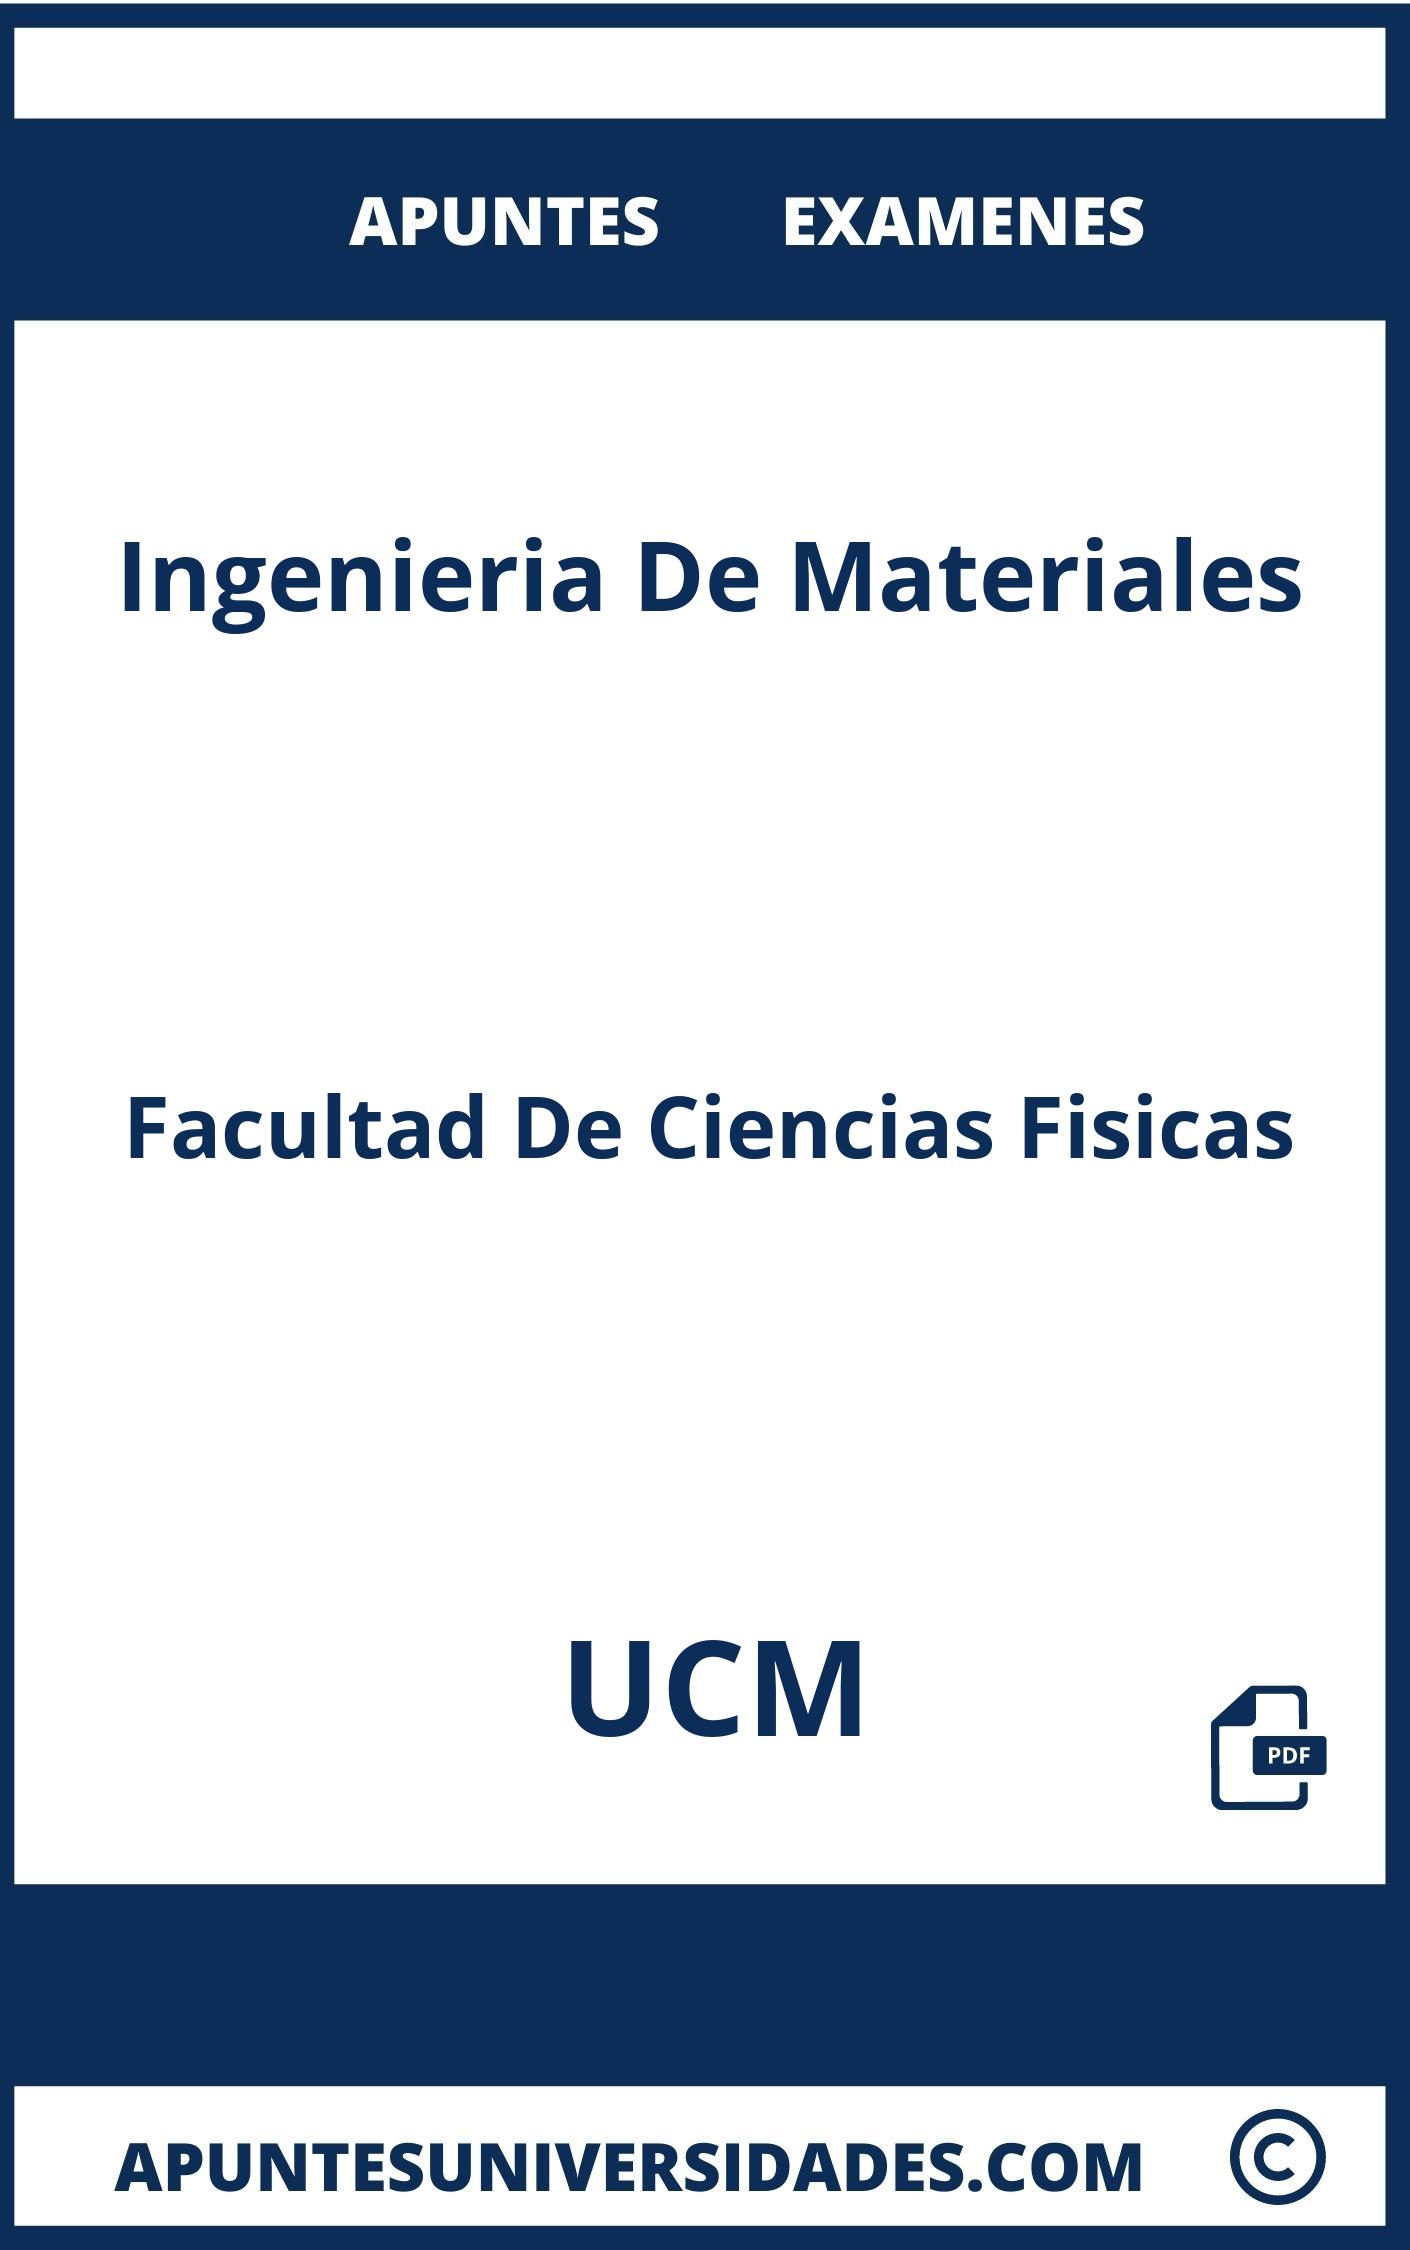 Examenes Apuntes Ingenieria De Materiales UCM